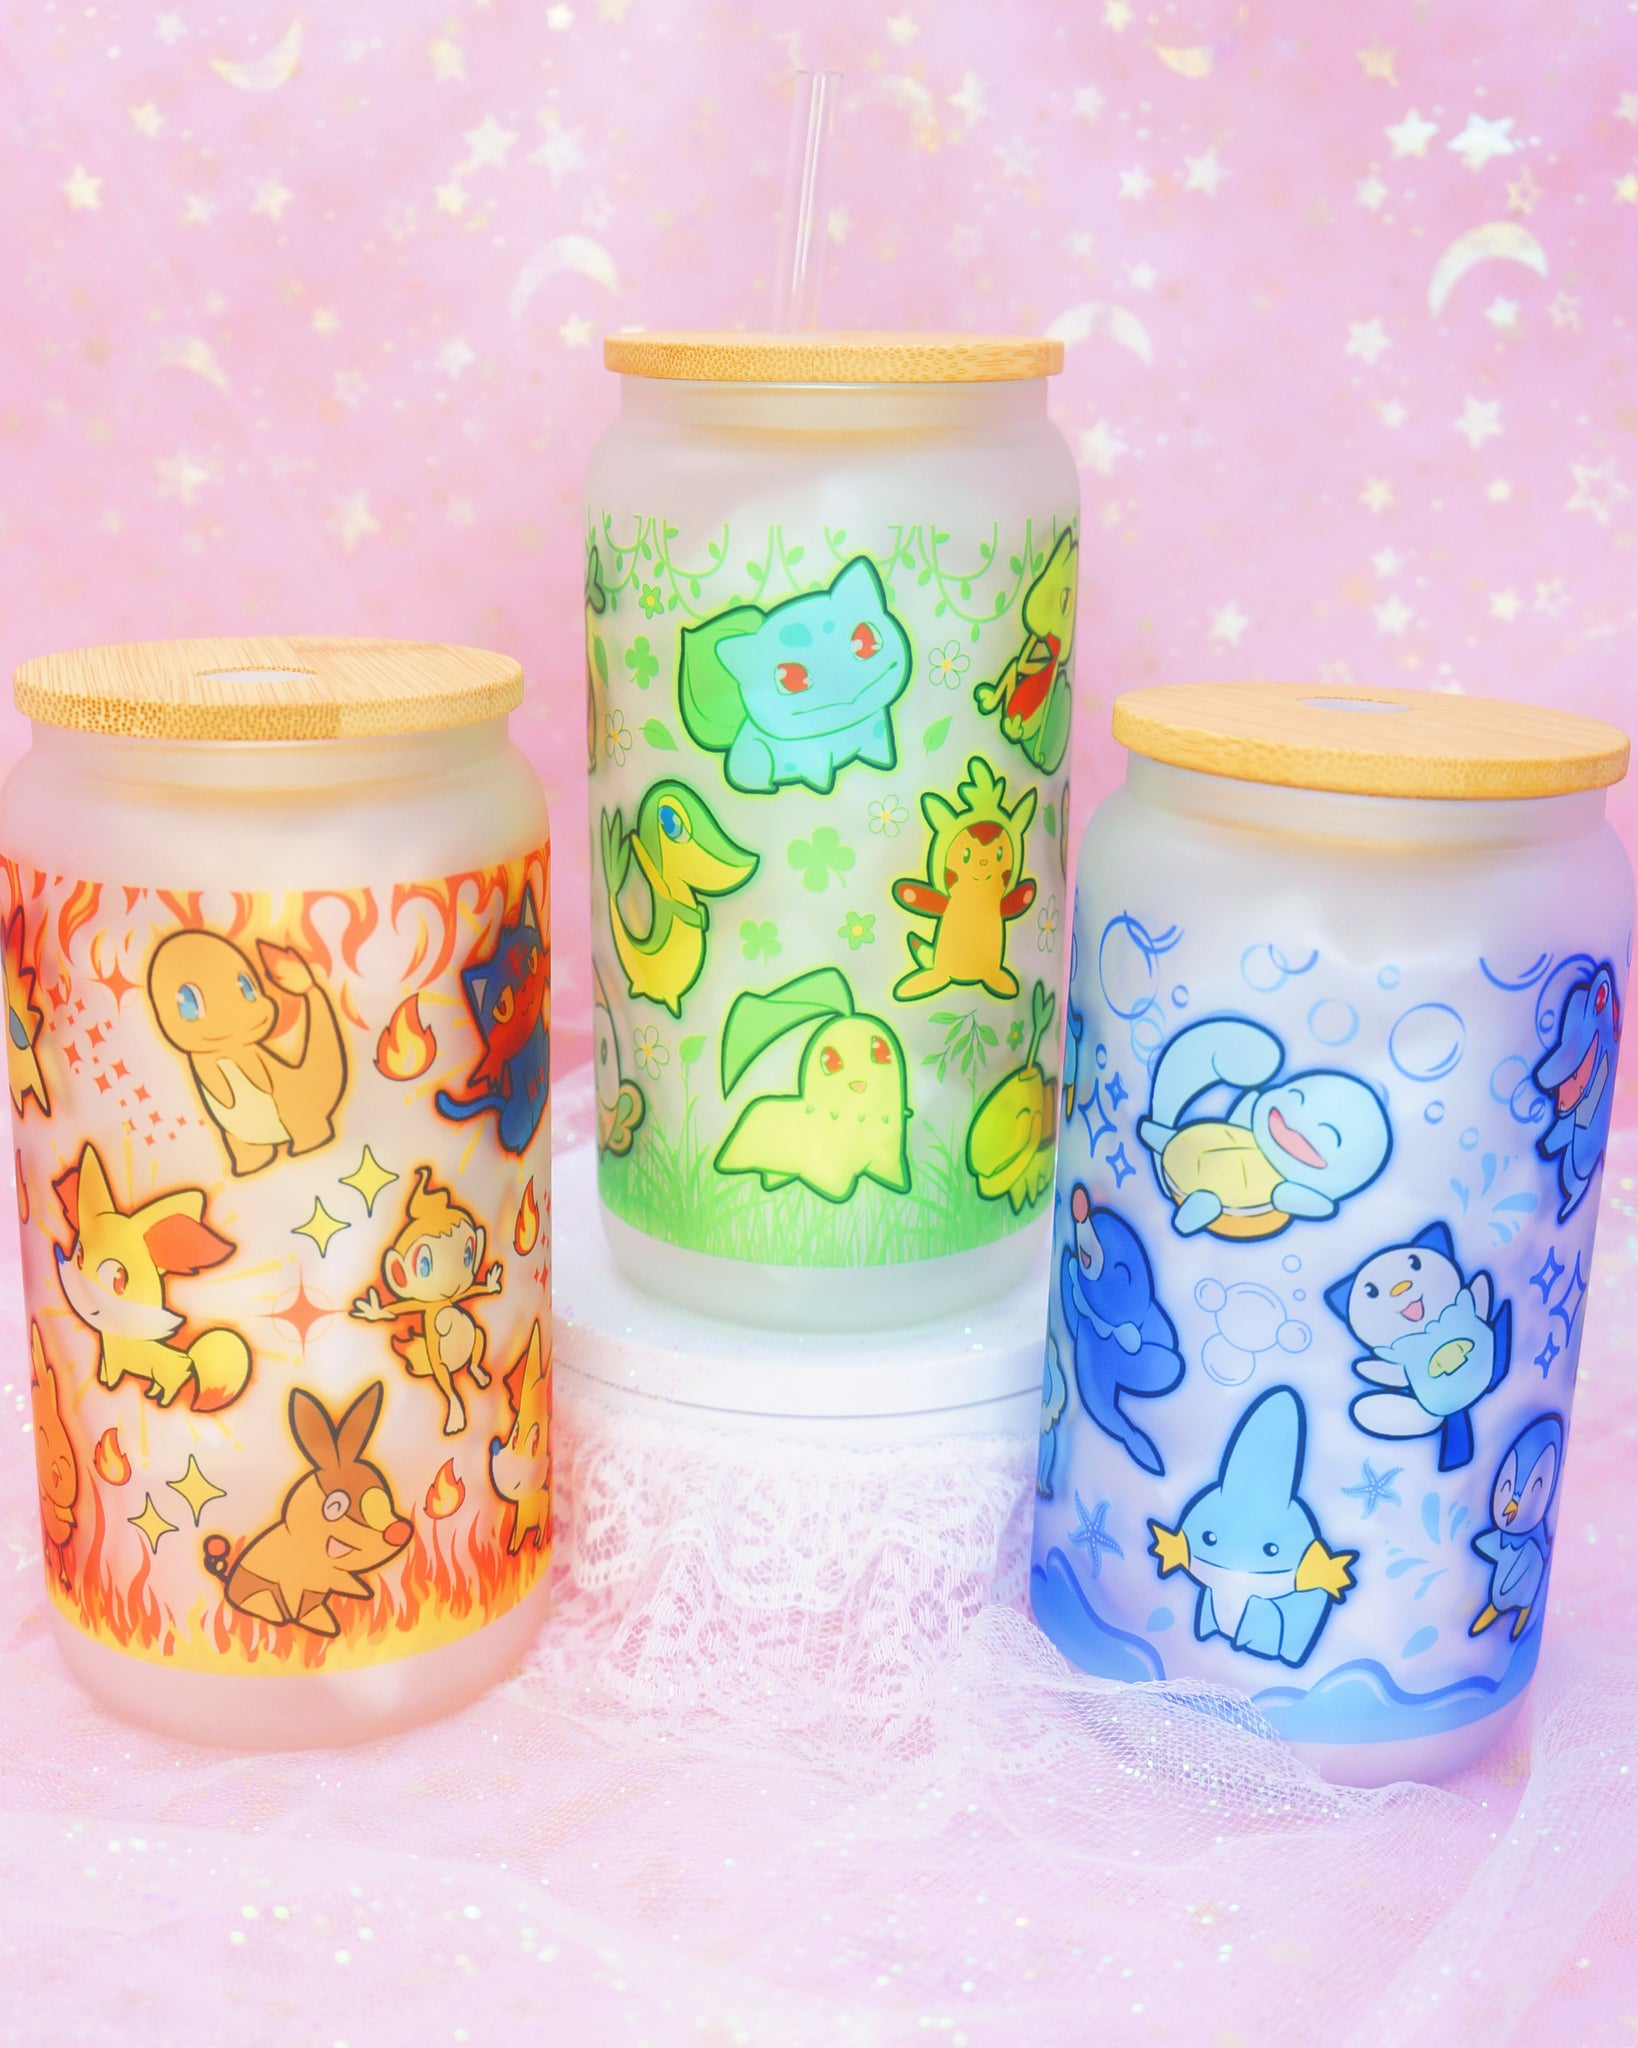 Pokemon Starter Group Pint Glass 4-Pack